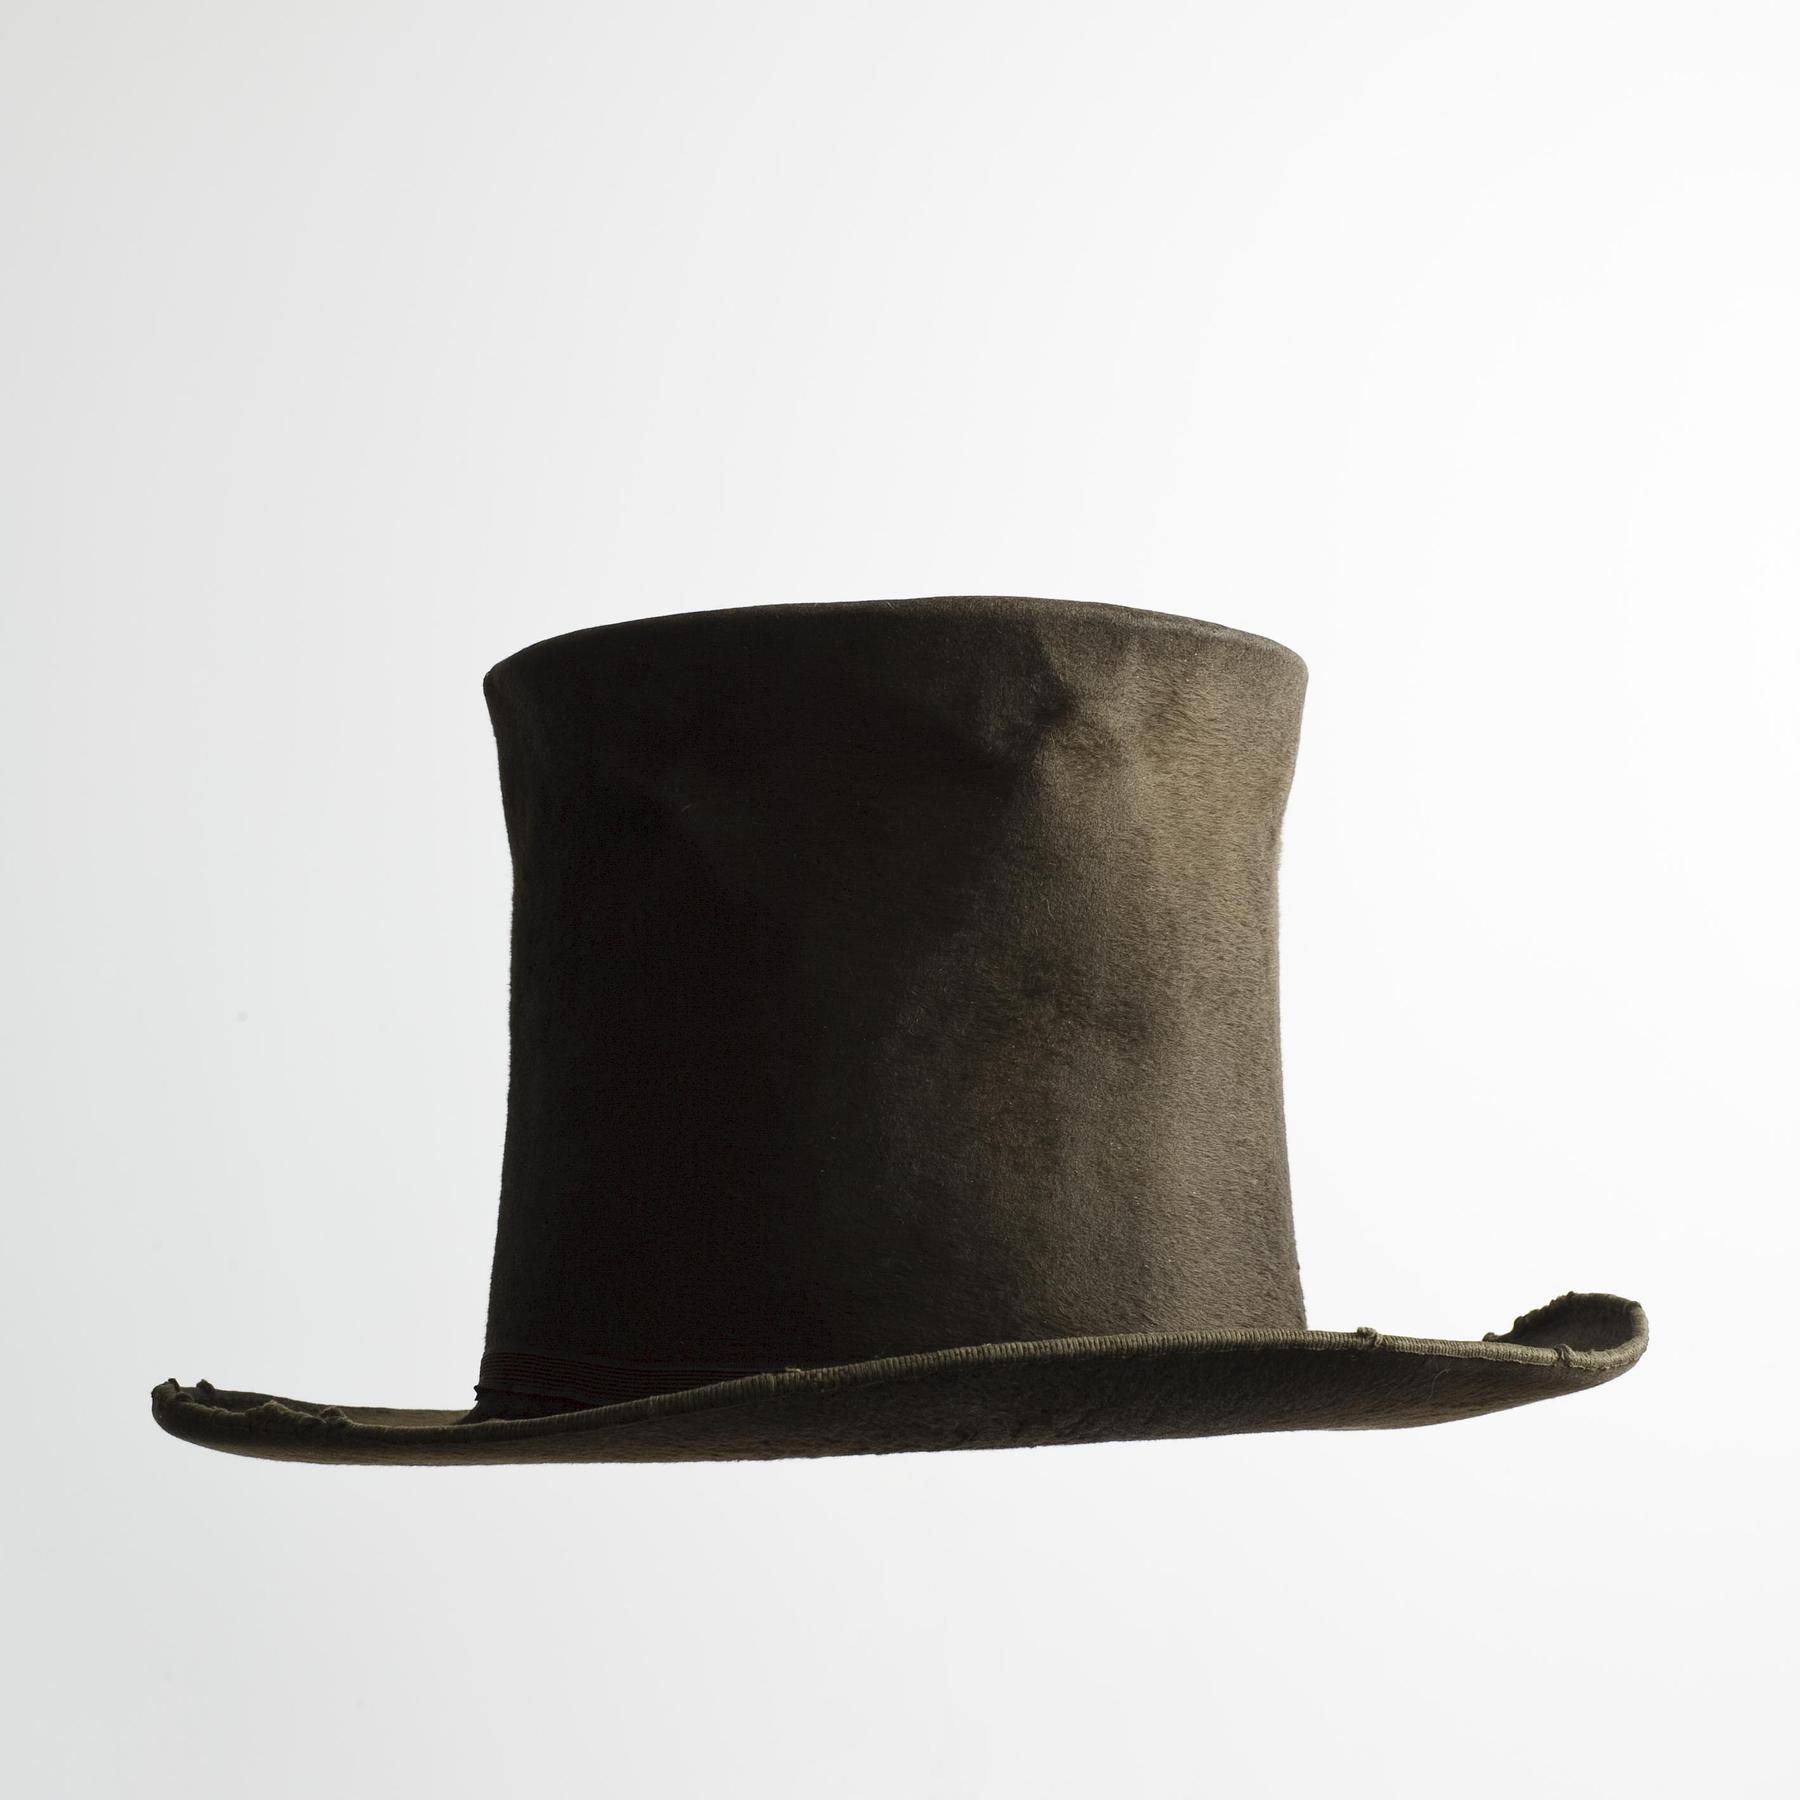 Thorvaldsens høje hat, N184